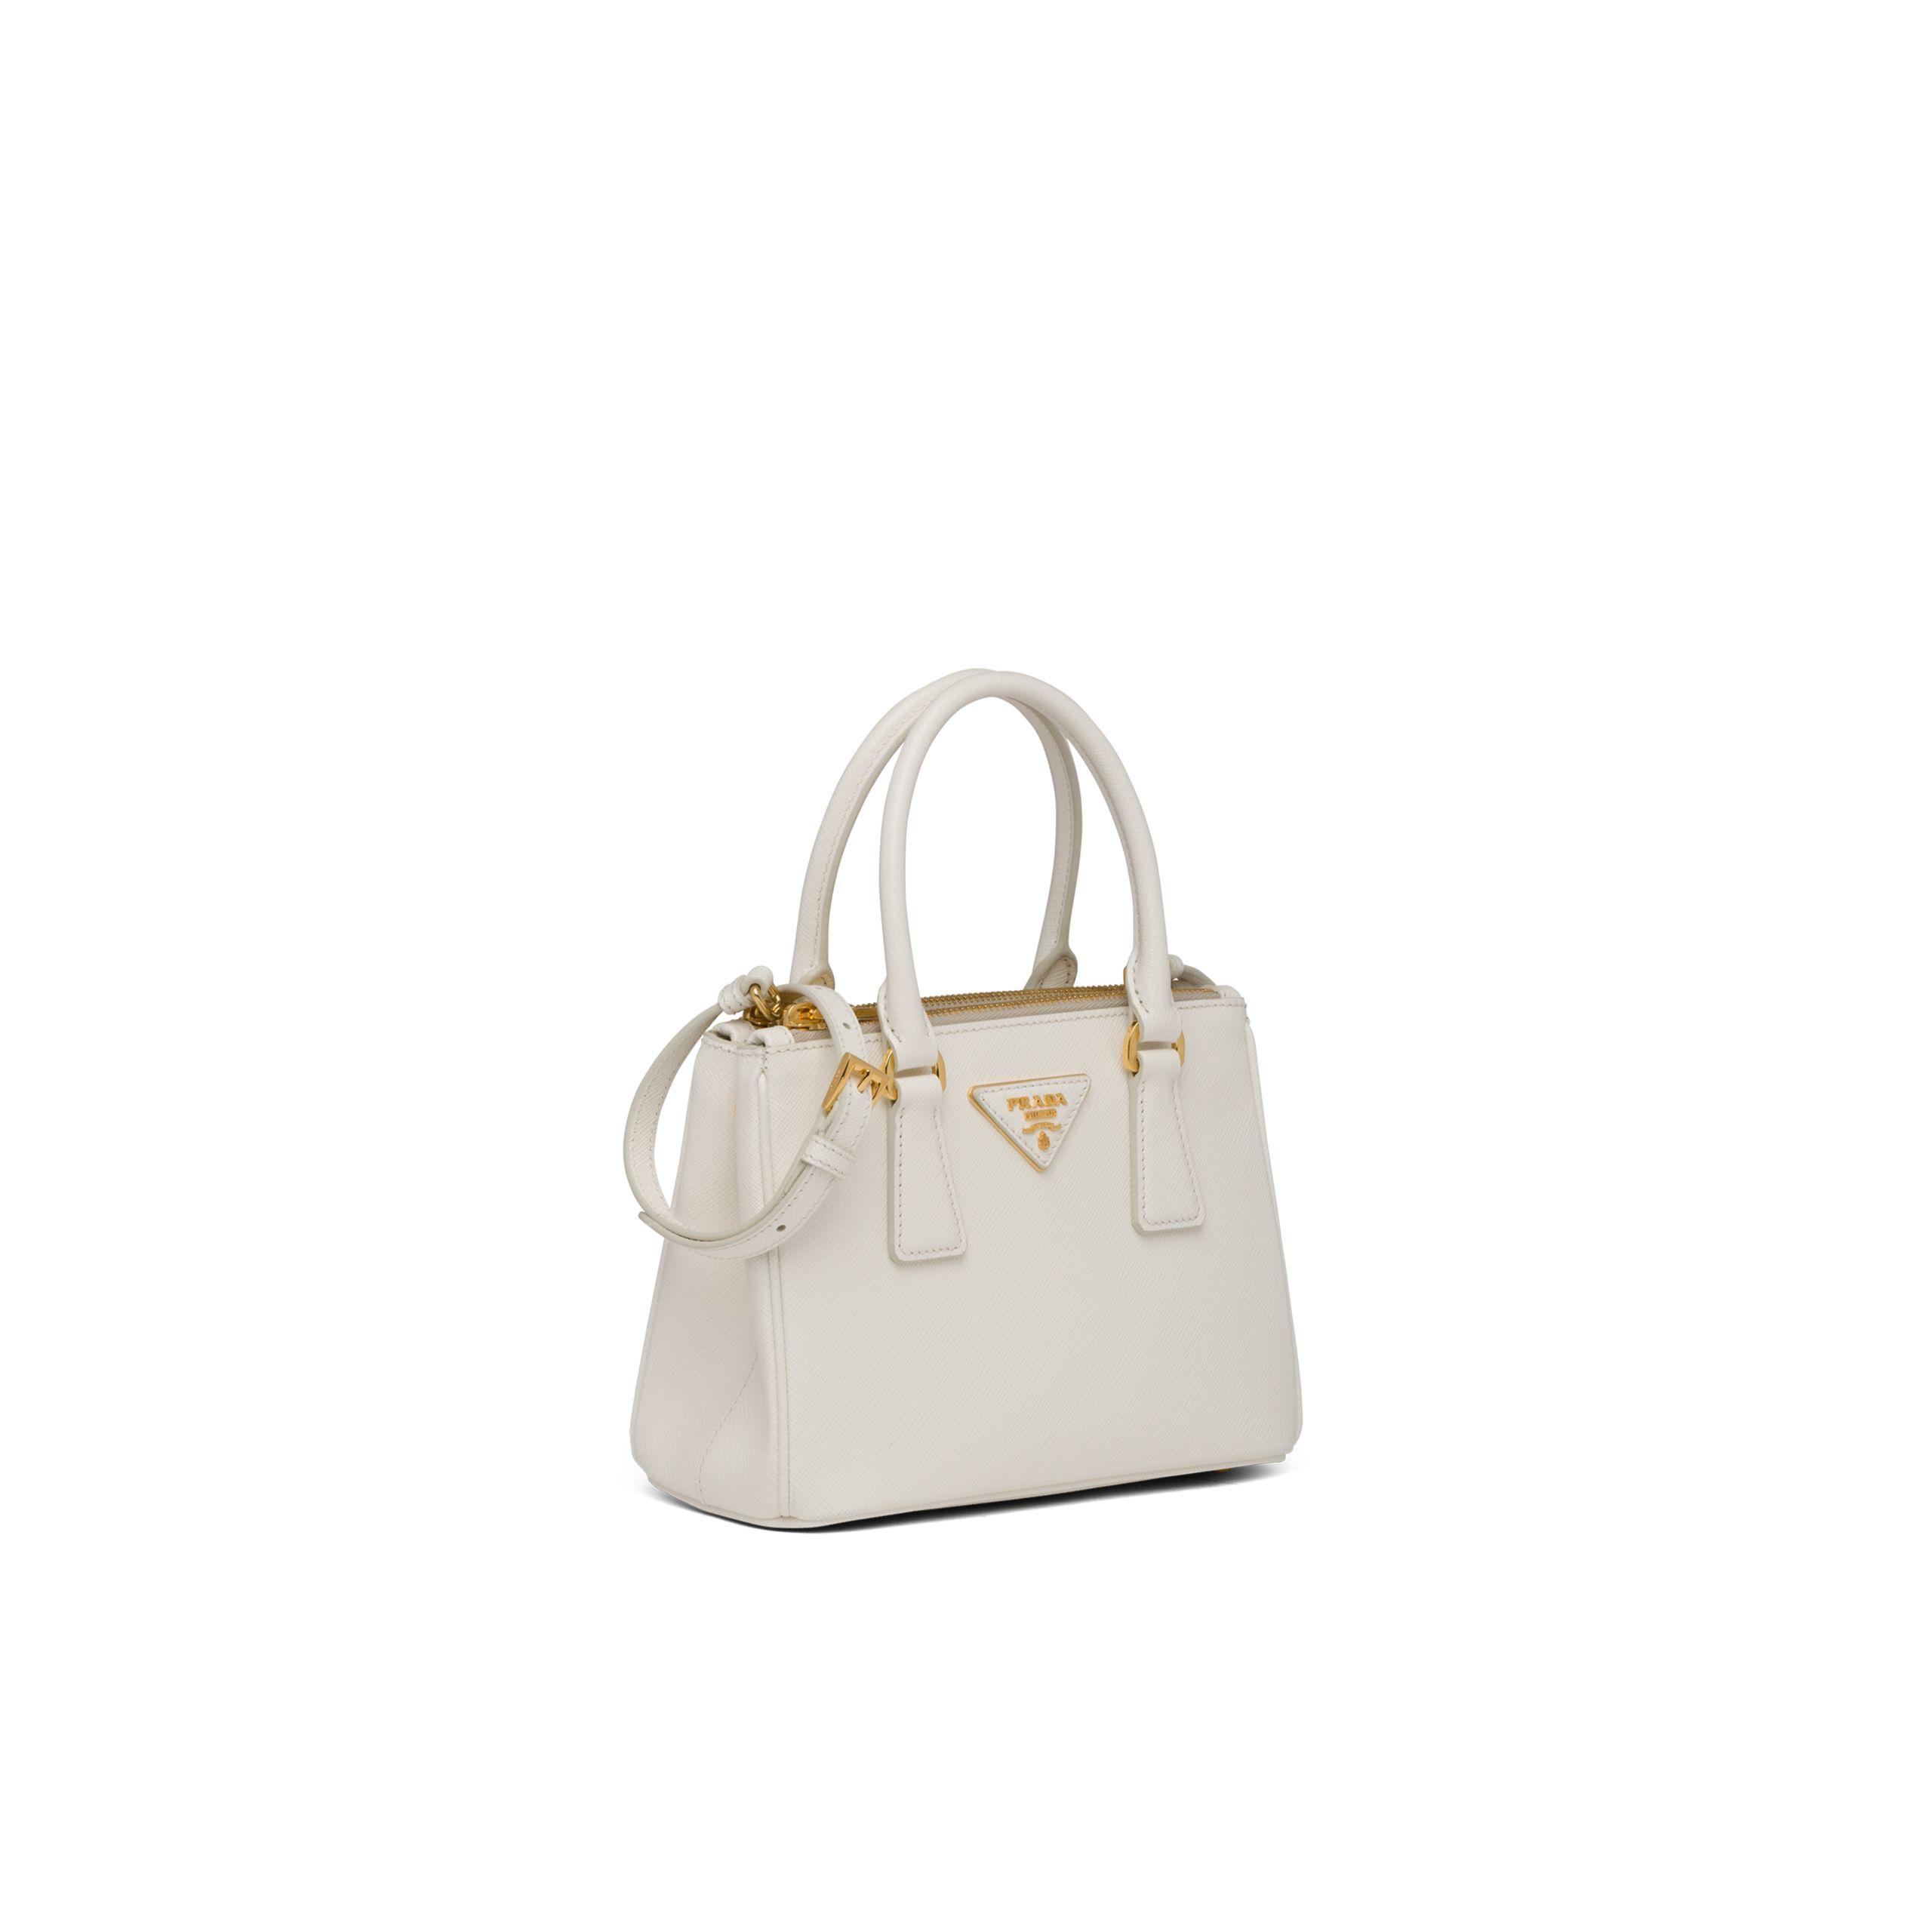 Prada Galleria Saffiano Leather Micro-bag in White | Lyst